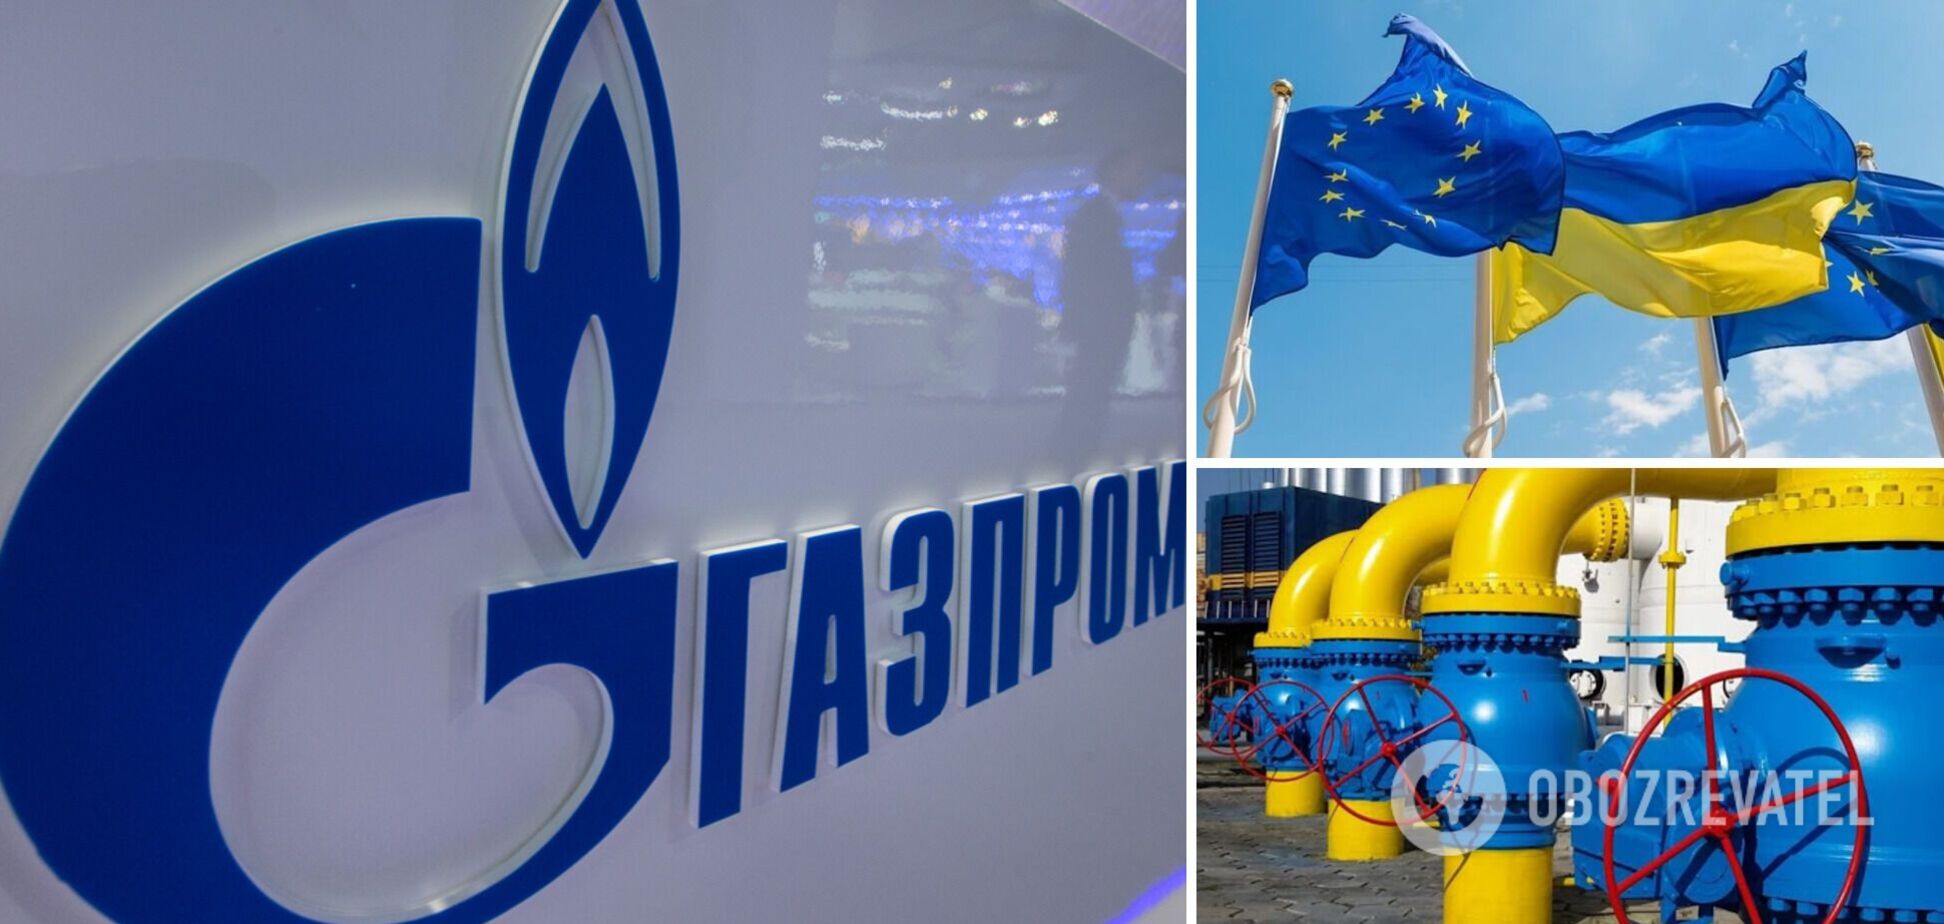 Макогон розповів про те, як 'Газпром' шантажує Європу